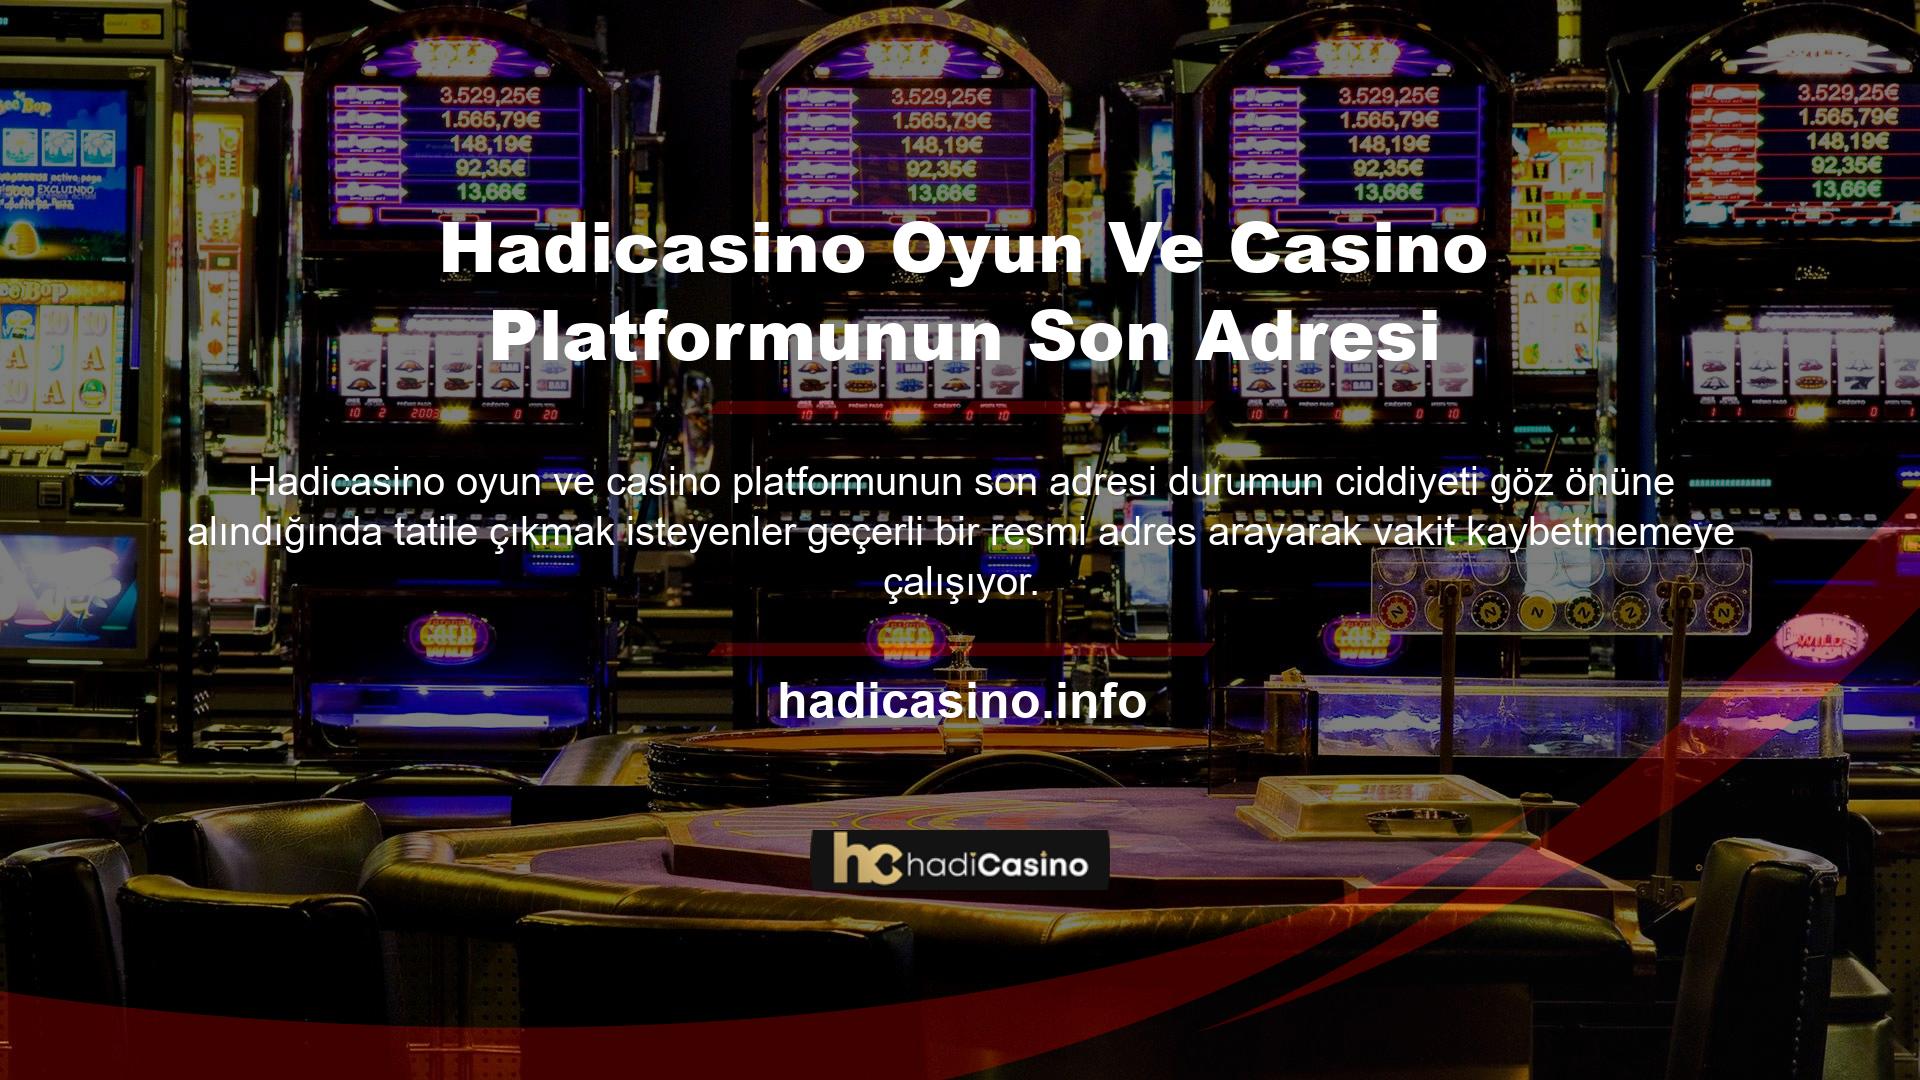 Yurt dışında faaliyet gösteren çevrimiçi casino ve çevrimiçi casino platformları, Türkiye'de yasa dışı casino olarak kabul edilir ve kullanılamayabilir